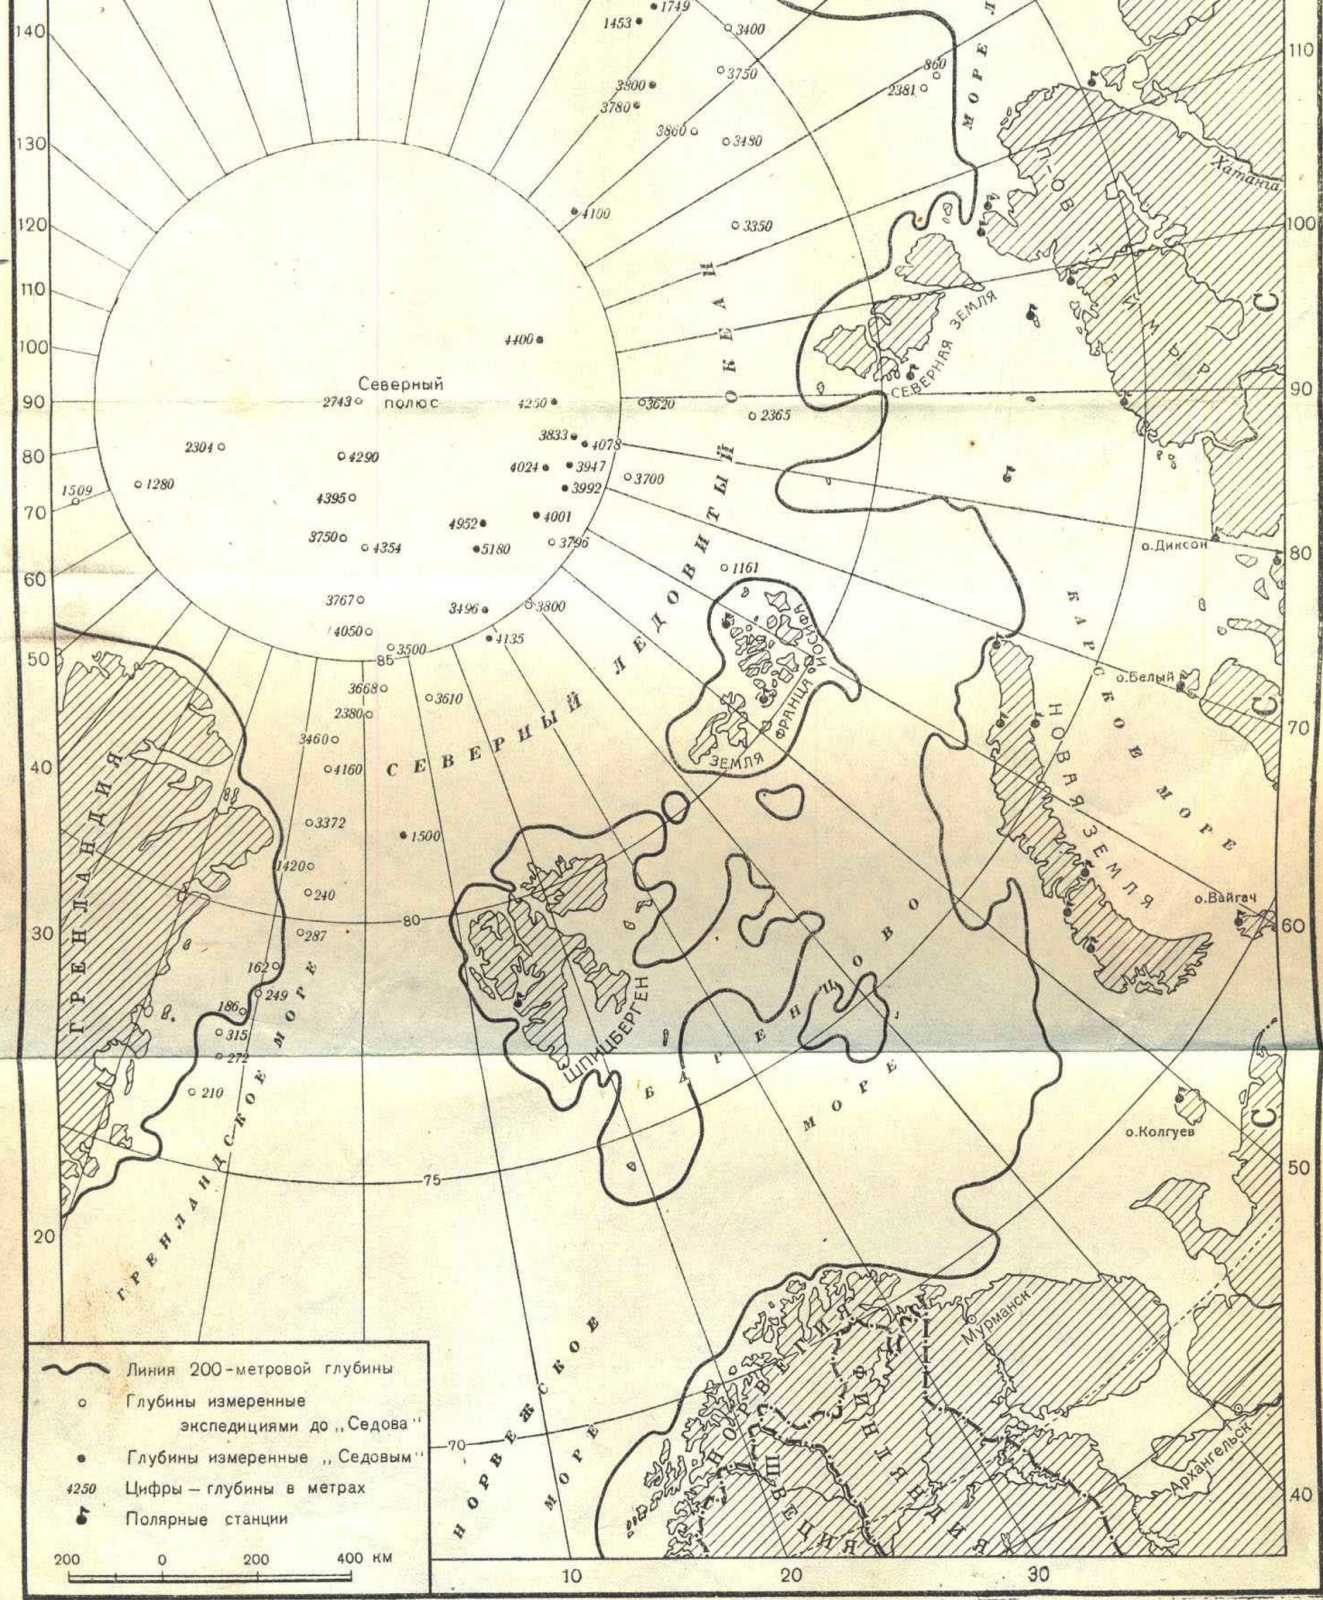 Гидрографическая изученность Северного Ледовитого океана до начала работ СГЭ. Иллюстрация из книги Павла Федотова 